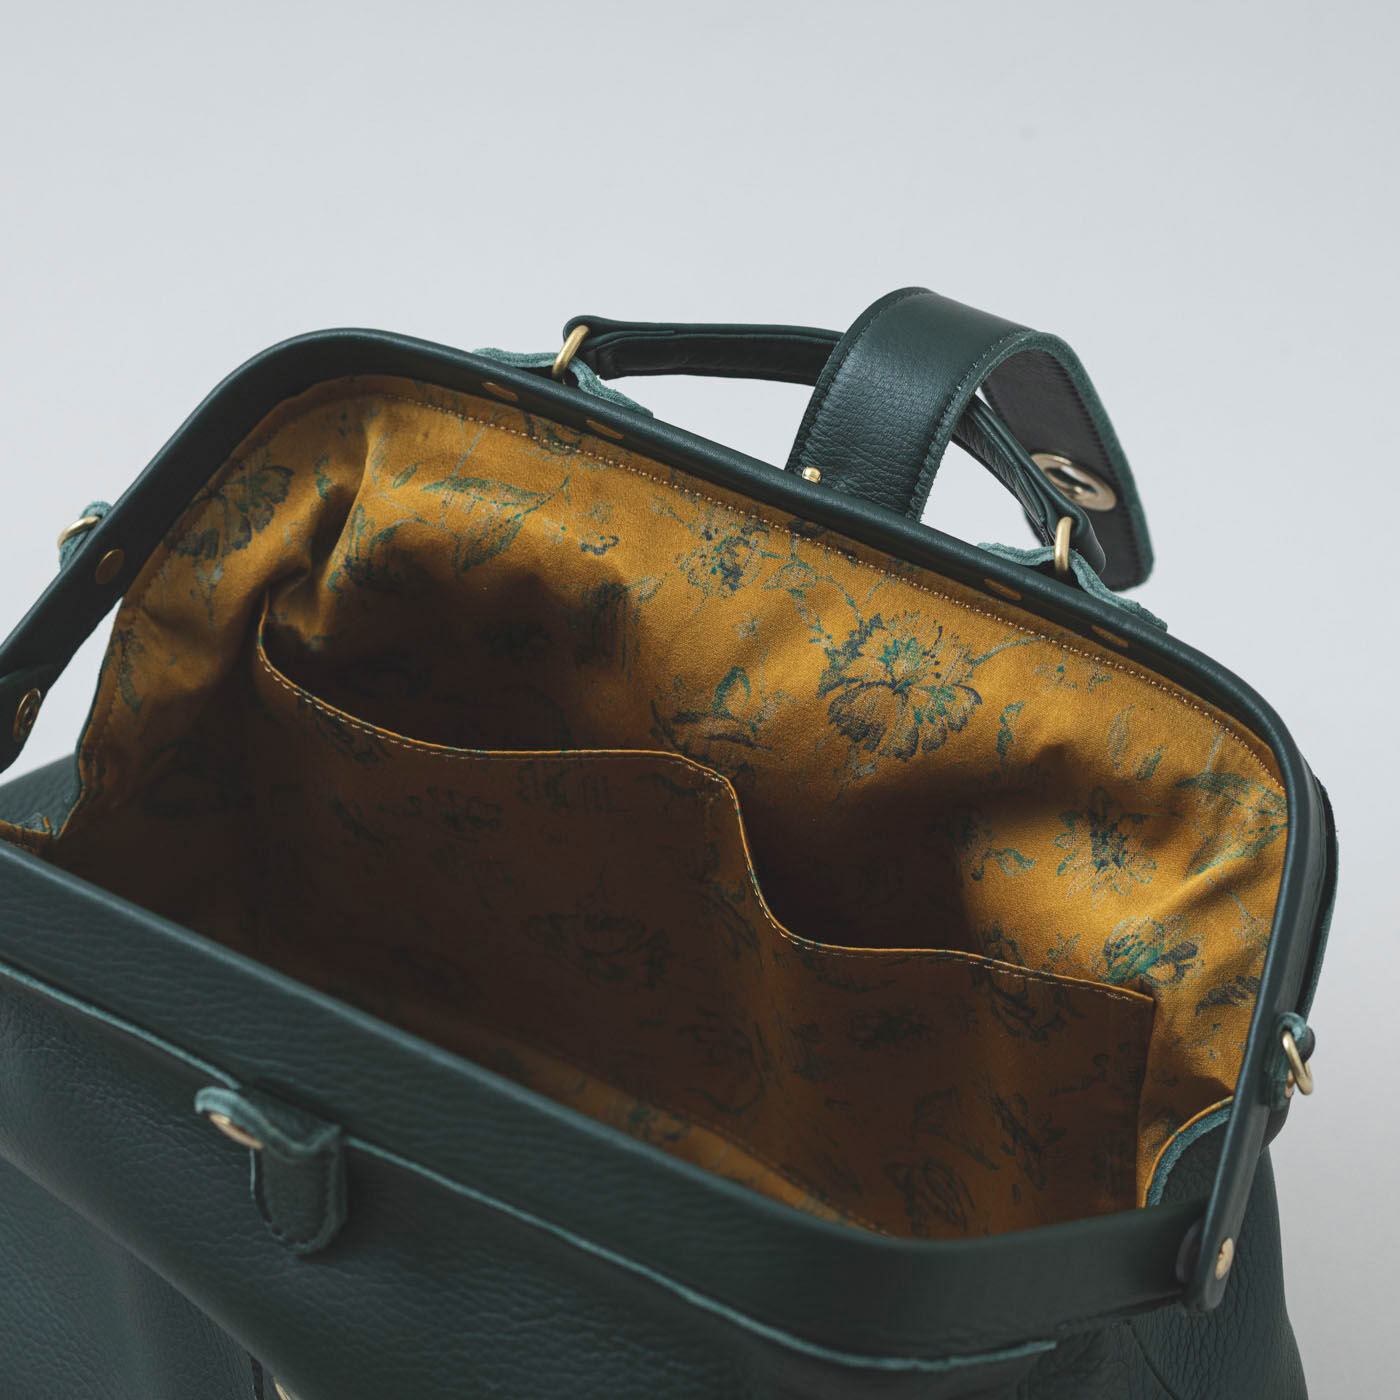 ＆Stories|プランナー山猫が作った 職人本革のミドルダレス〈フォレストグリーン〉|鞄の中には内ポケットが2個あります。